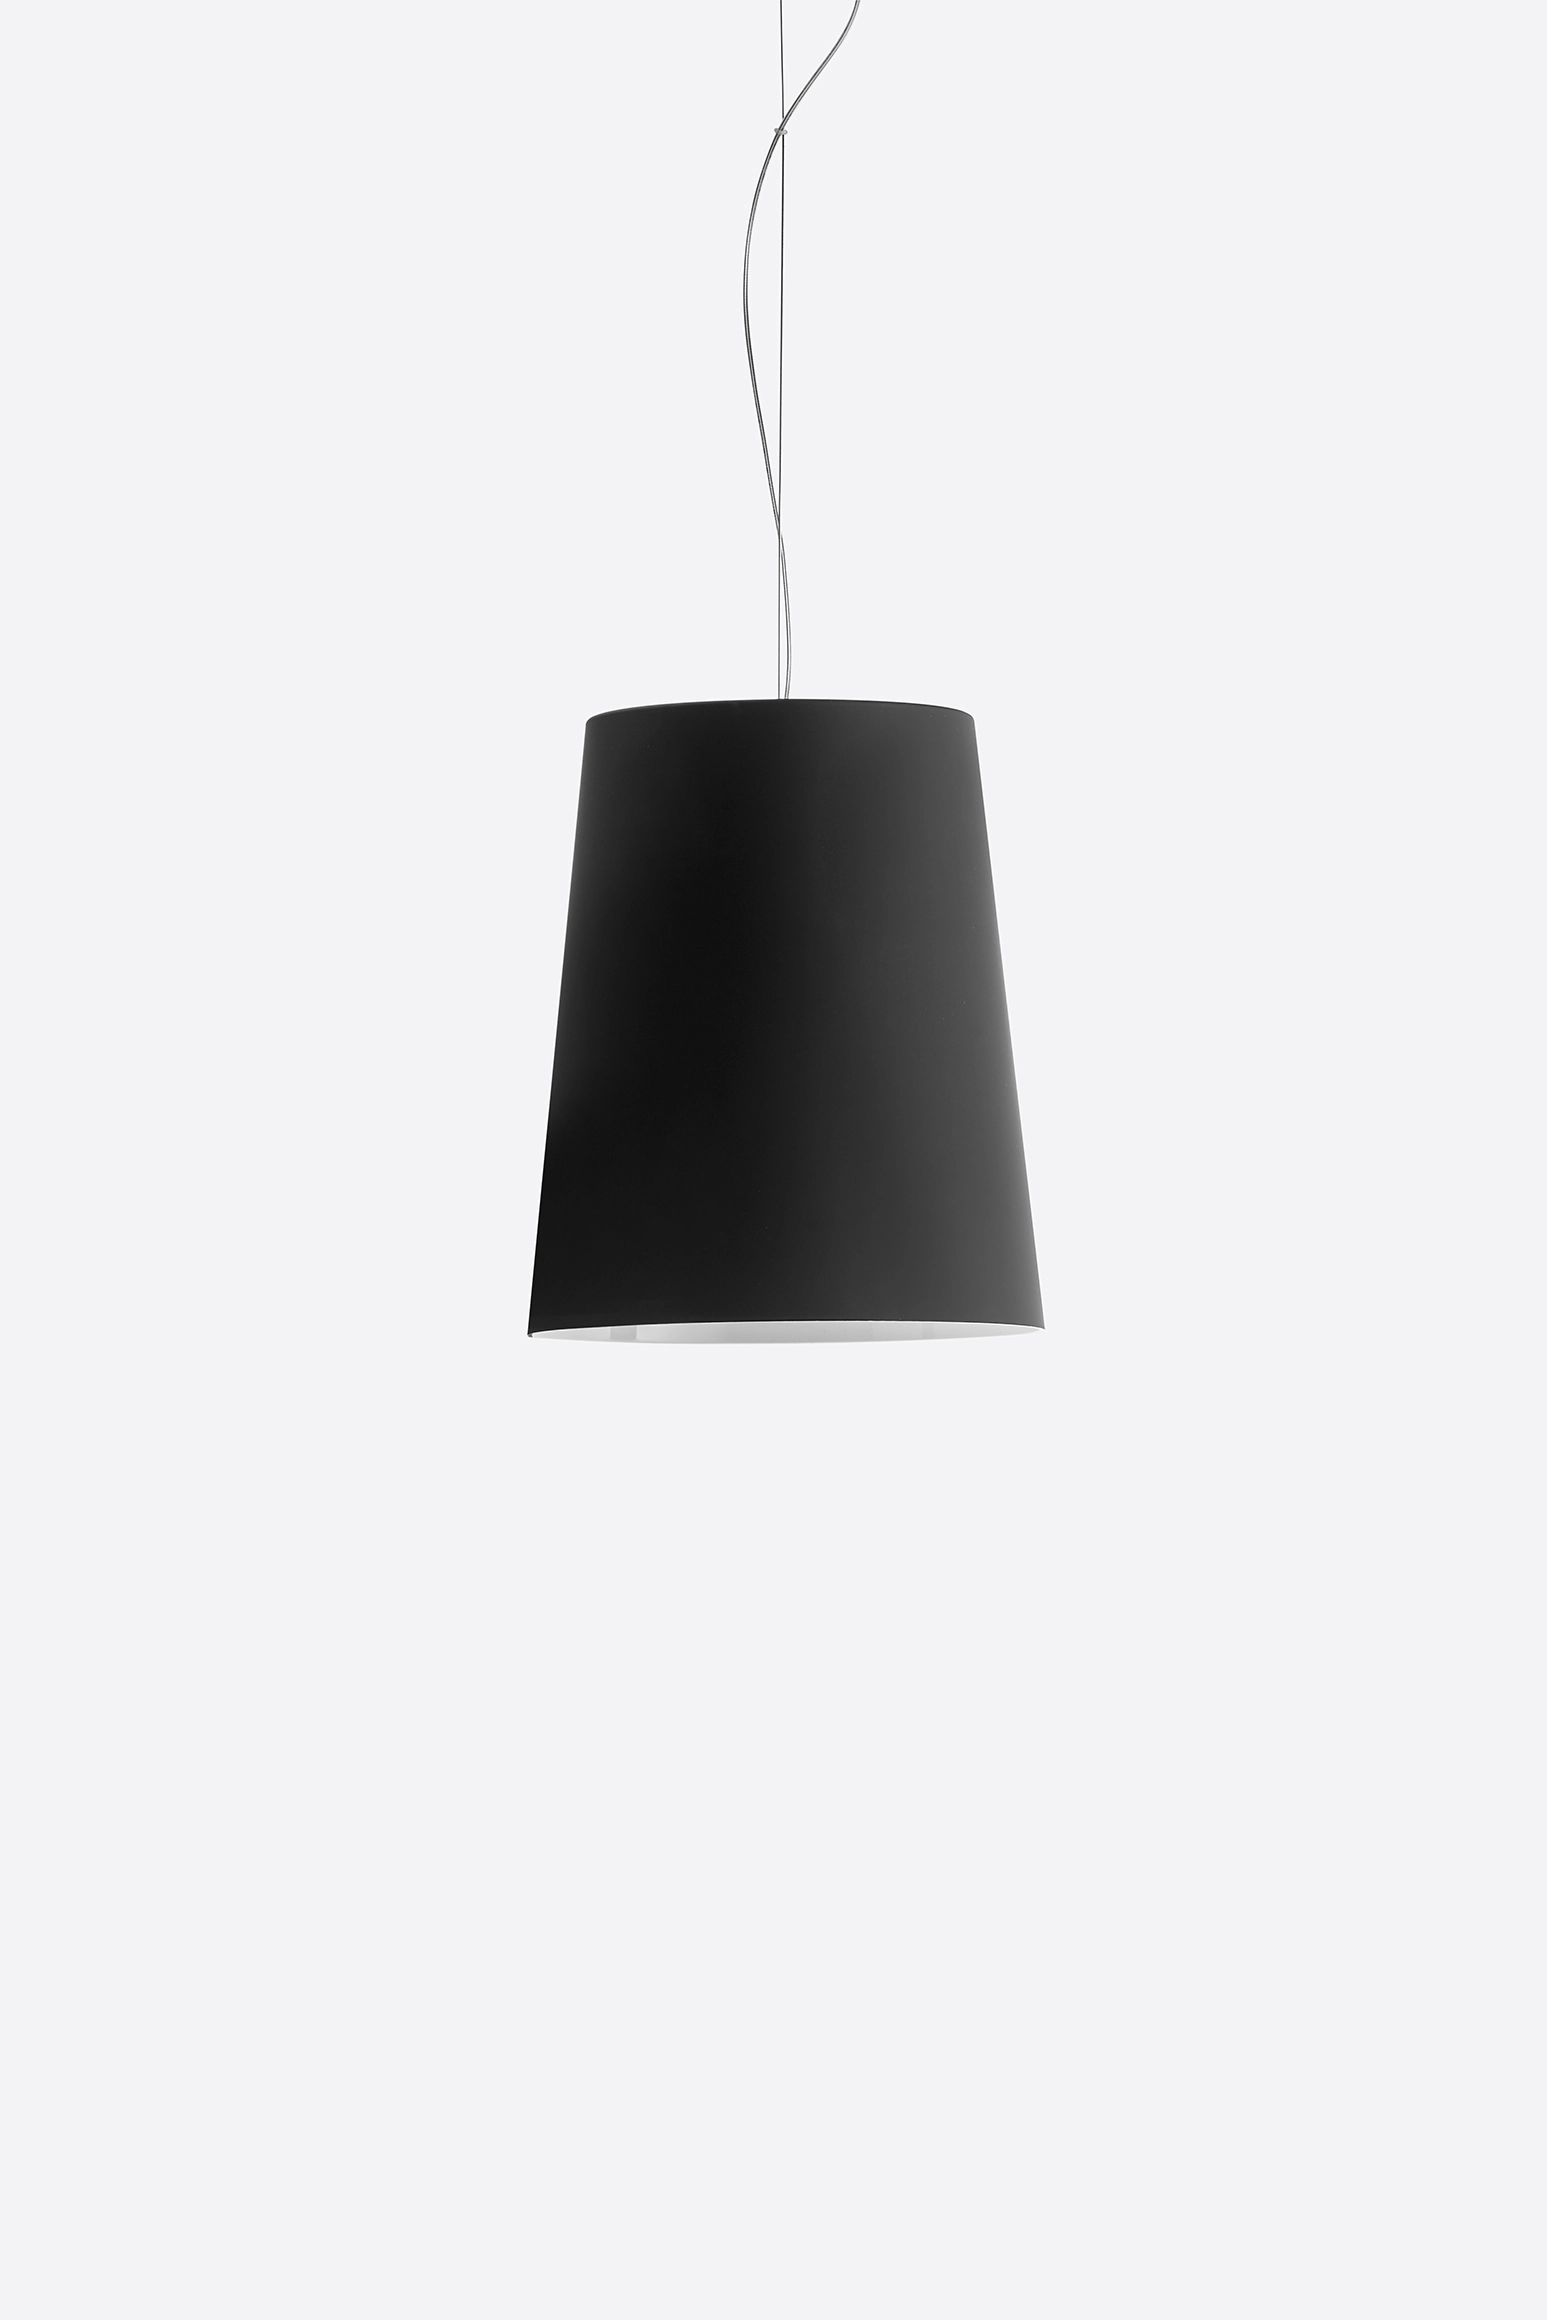 Hängelampe L001S/A SOFT - Design Lampe von Pedrali Soft-touch BE - beige weiss 4,0 Meter